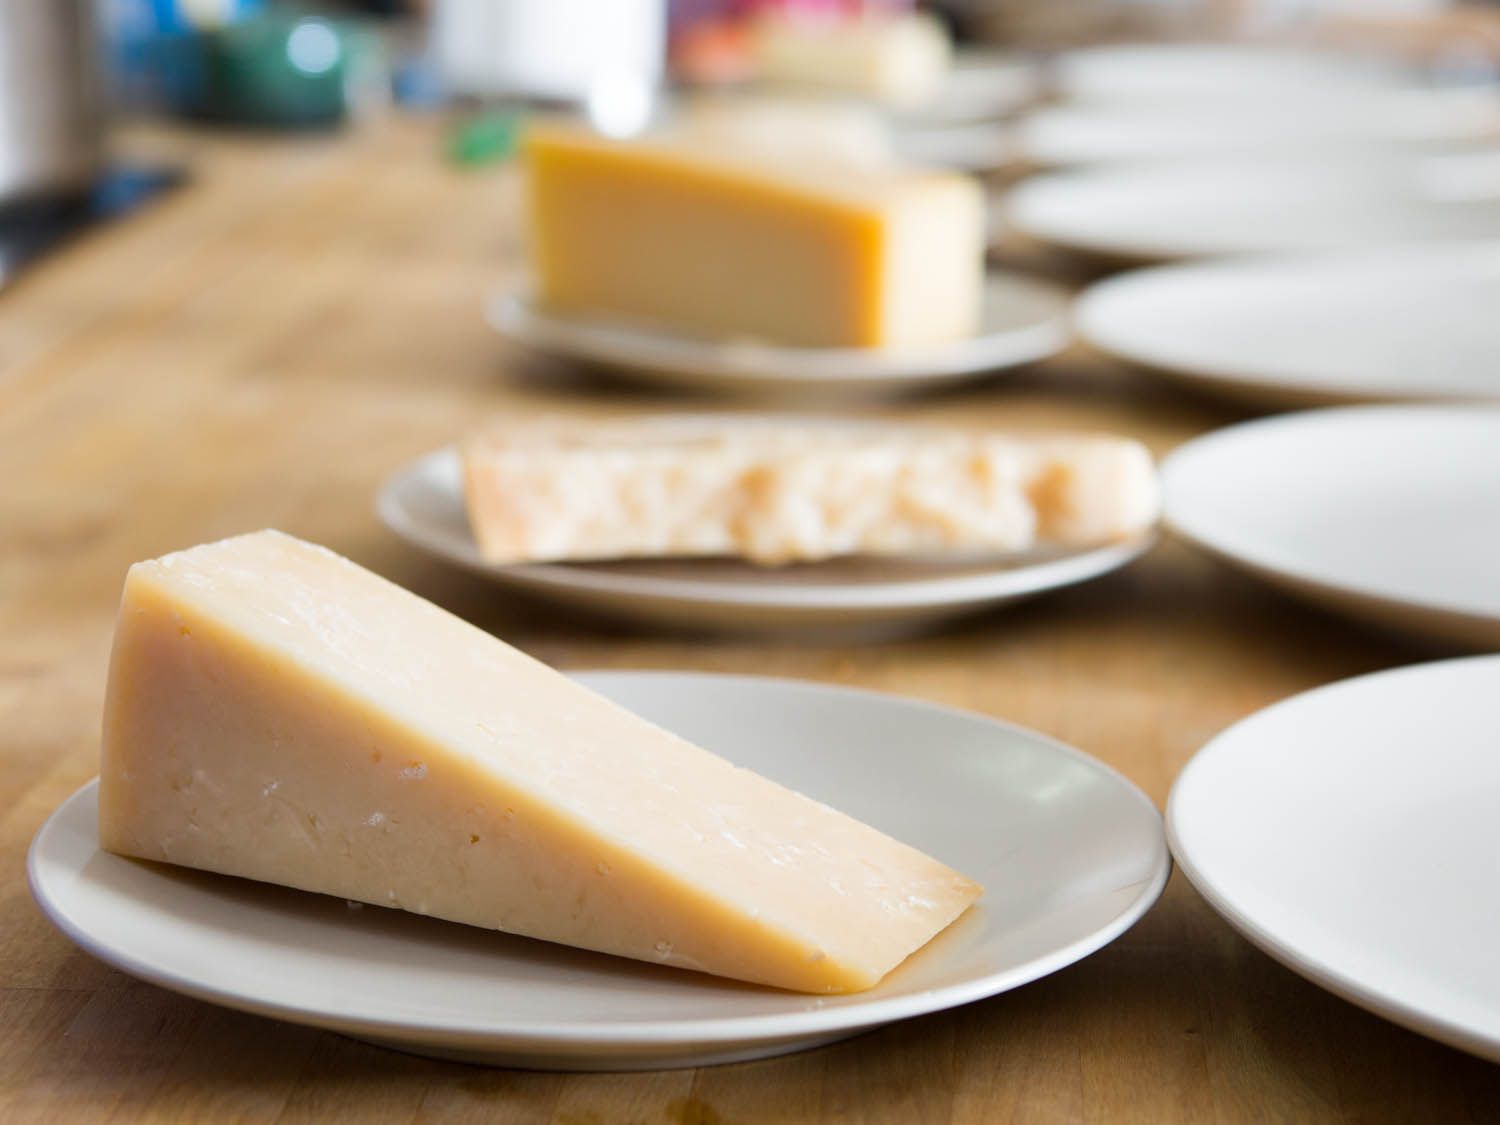 一张桌子，上面摆着十个小白盘子。其中五个盘子上有大块或楔形的奶酪。